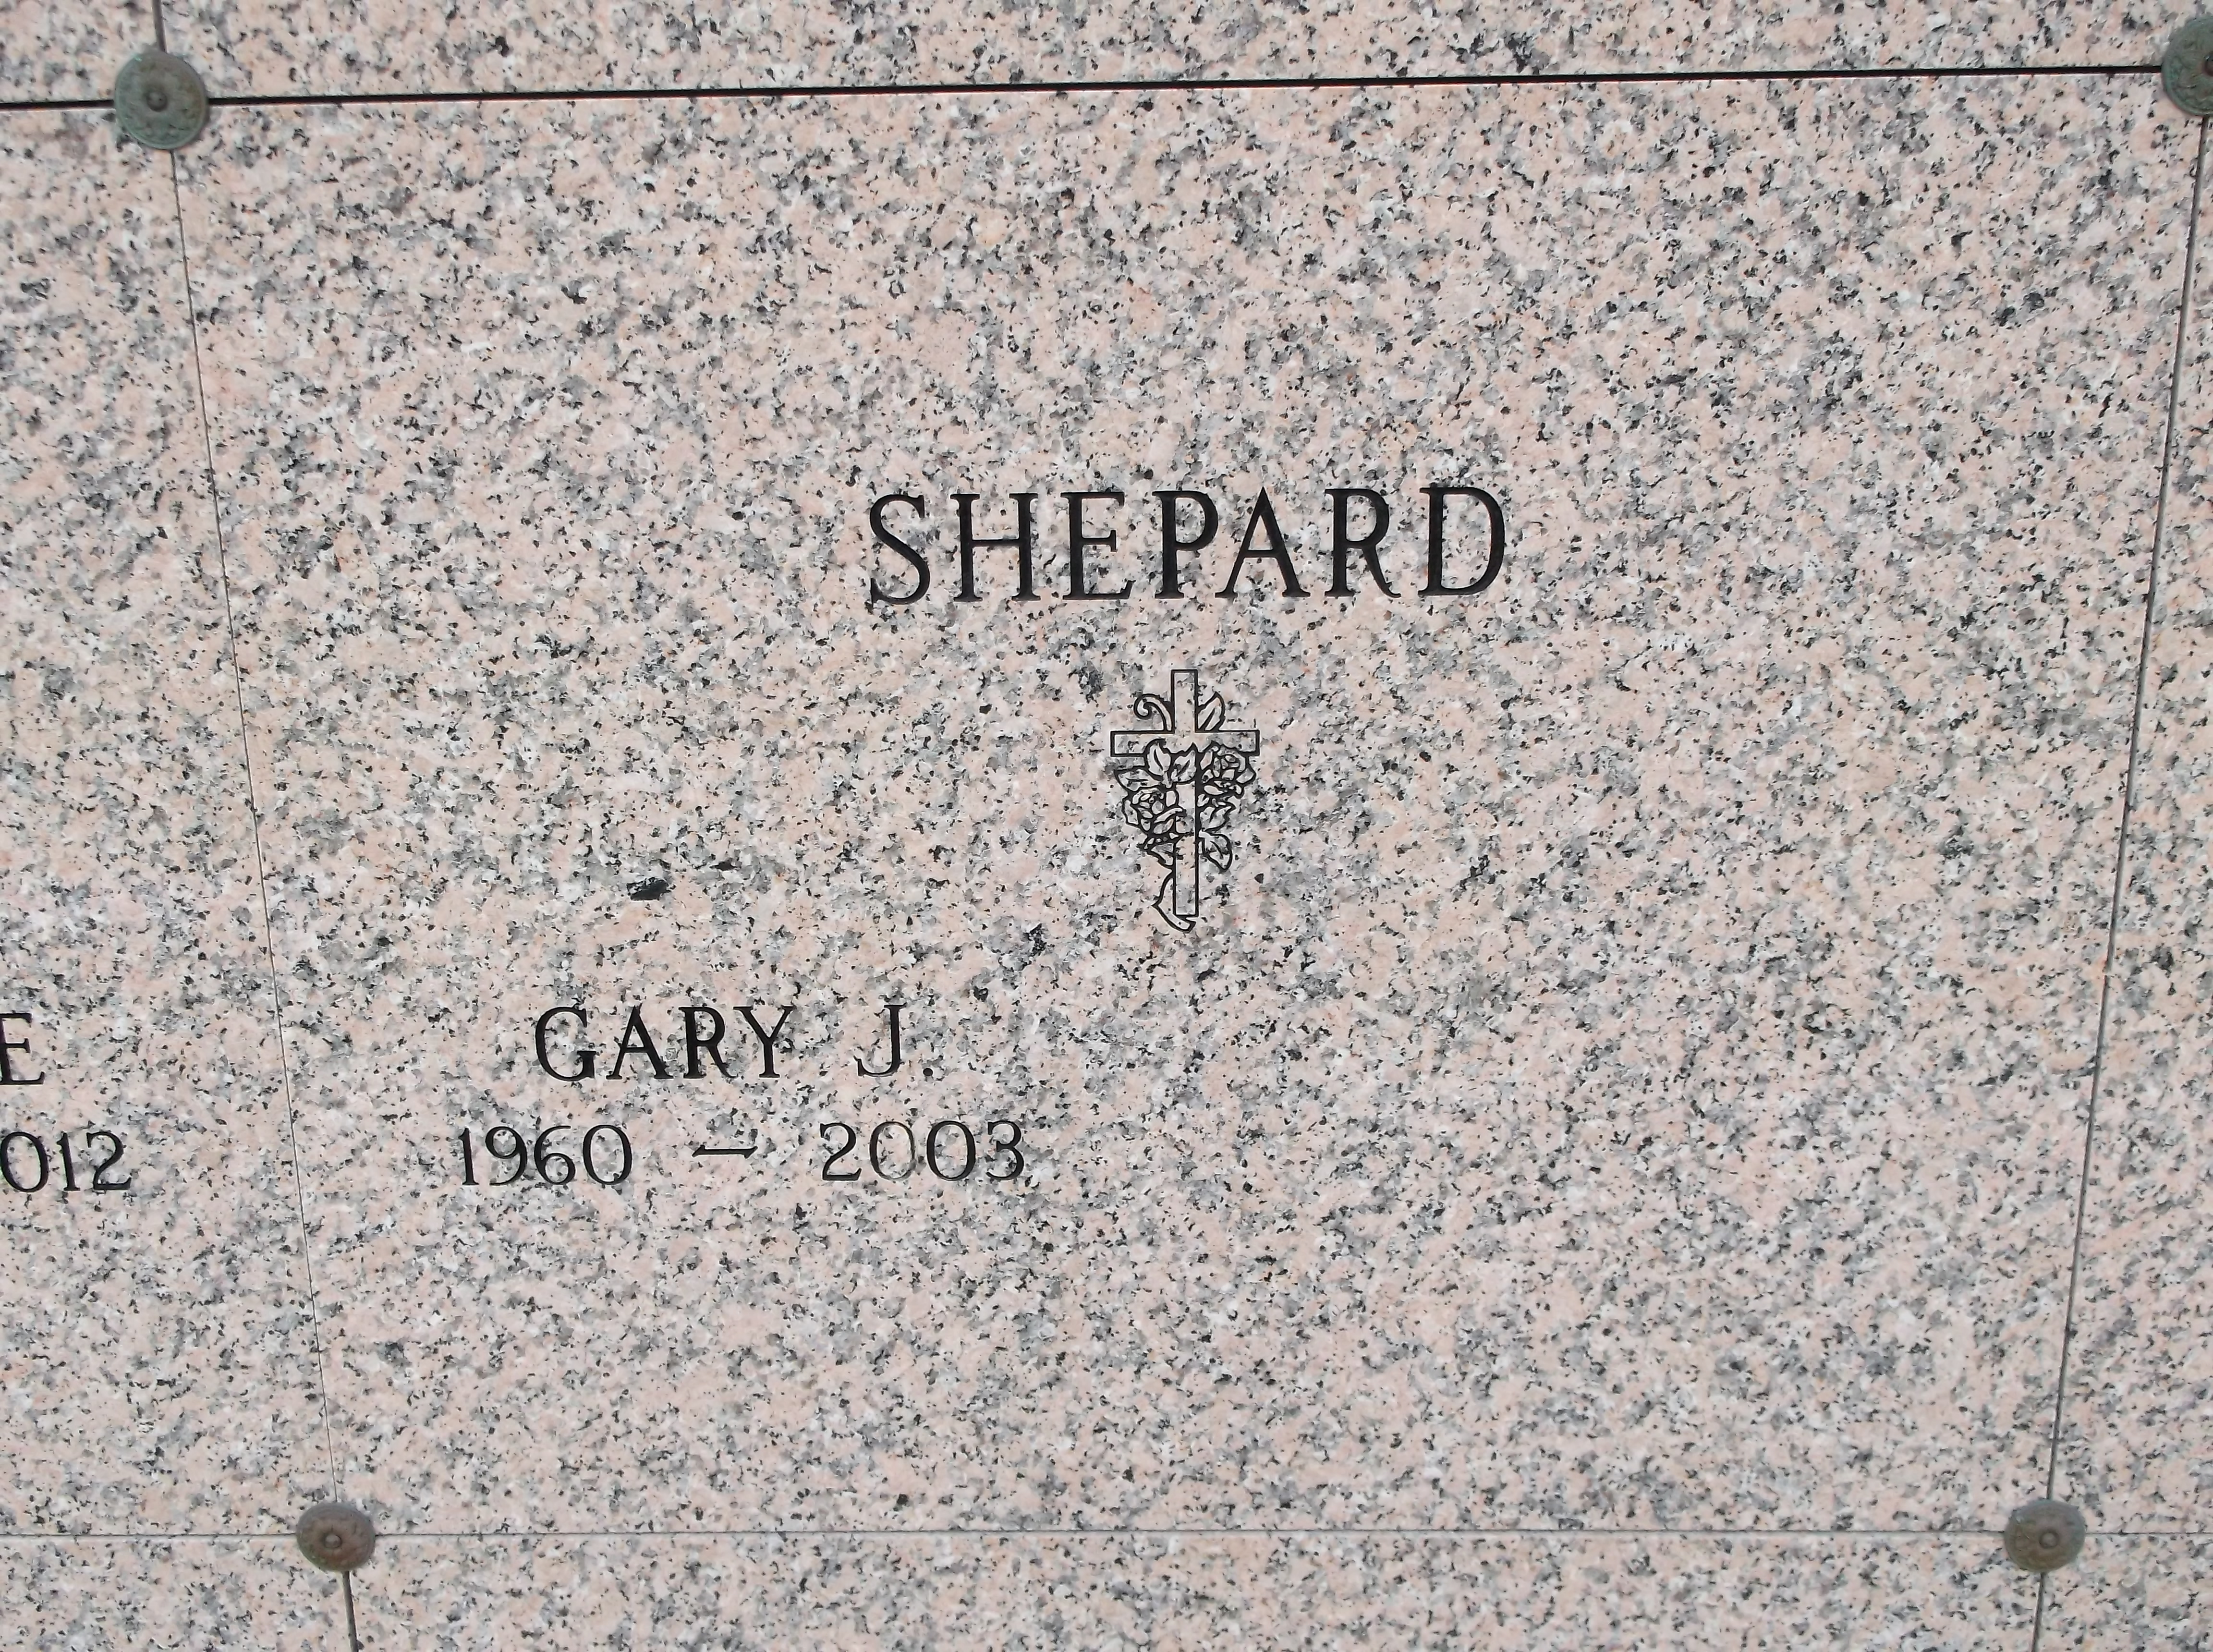 Gary J Shepard